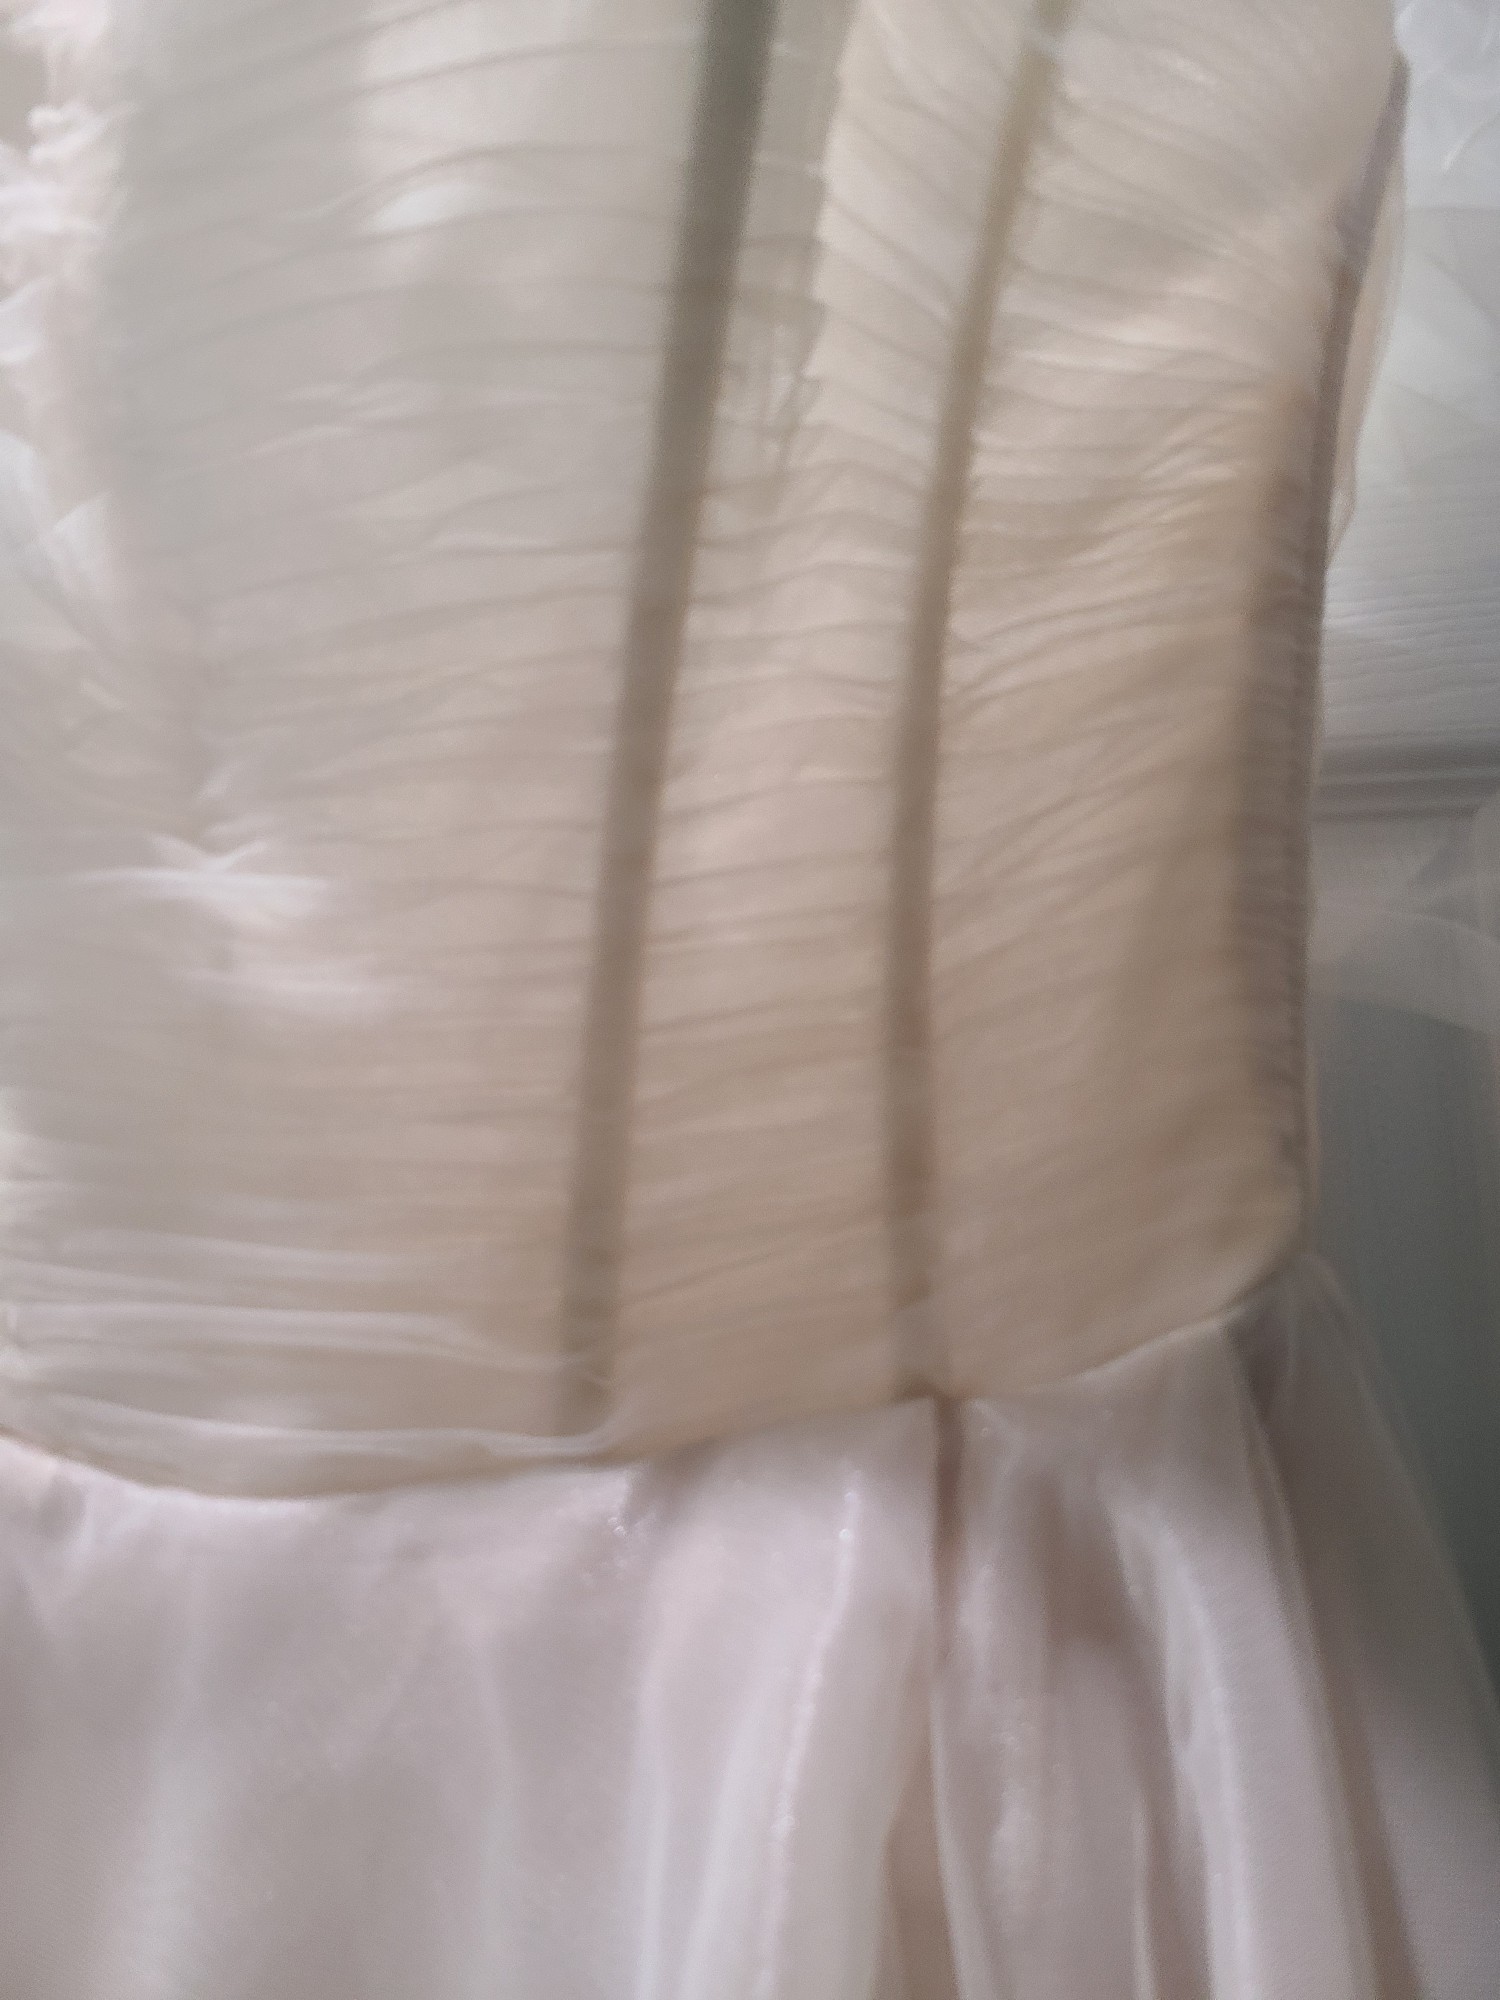 Galia Lahav G-501 New Wedding Dress Save 80% - Stillwhite